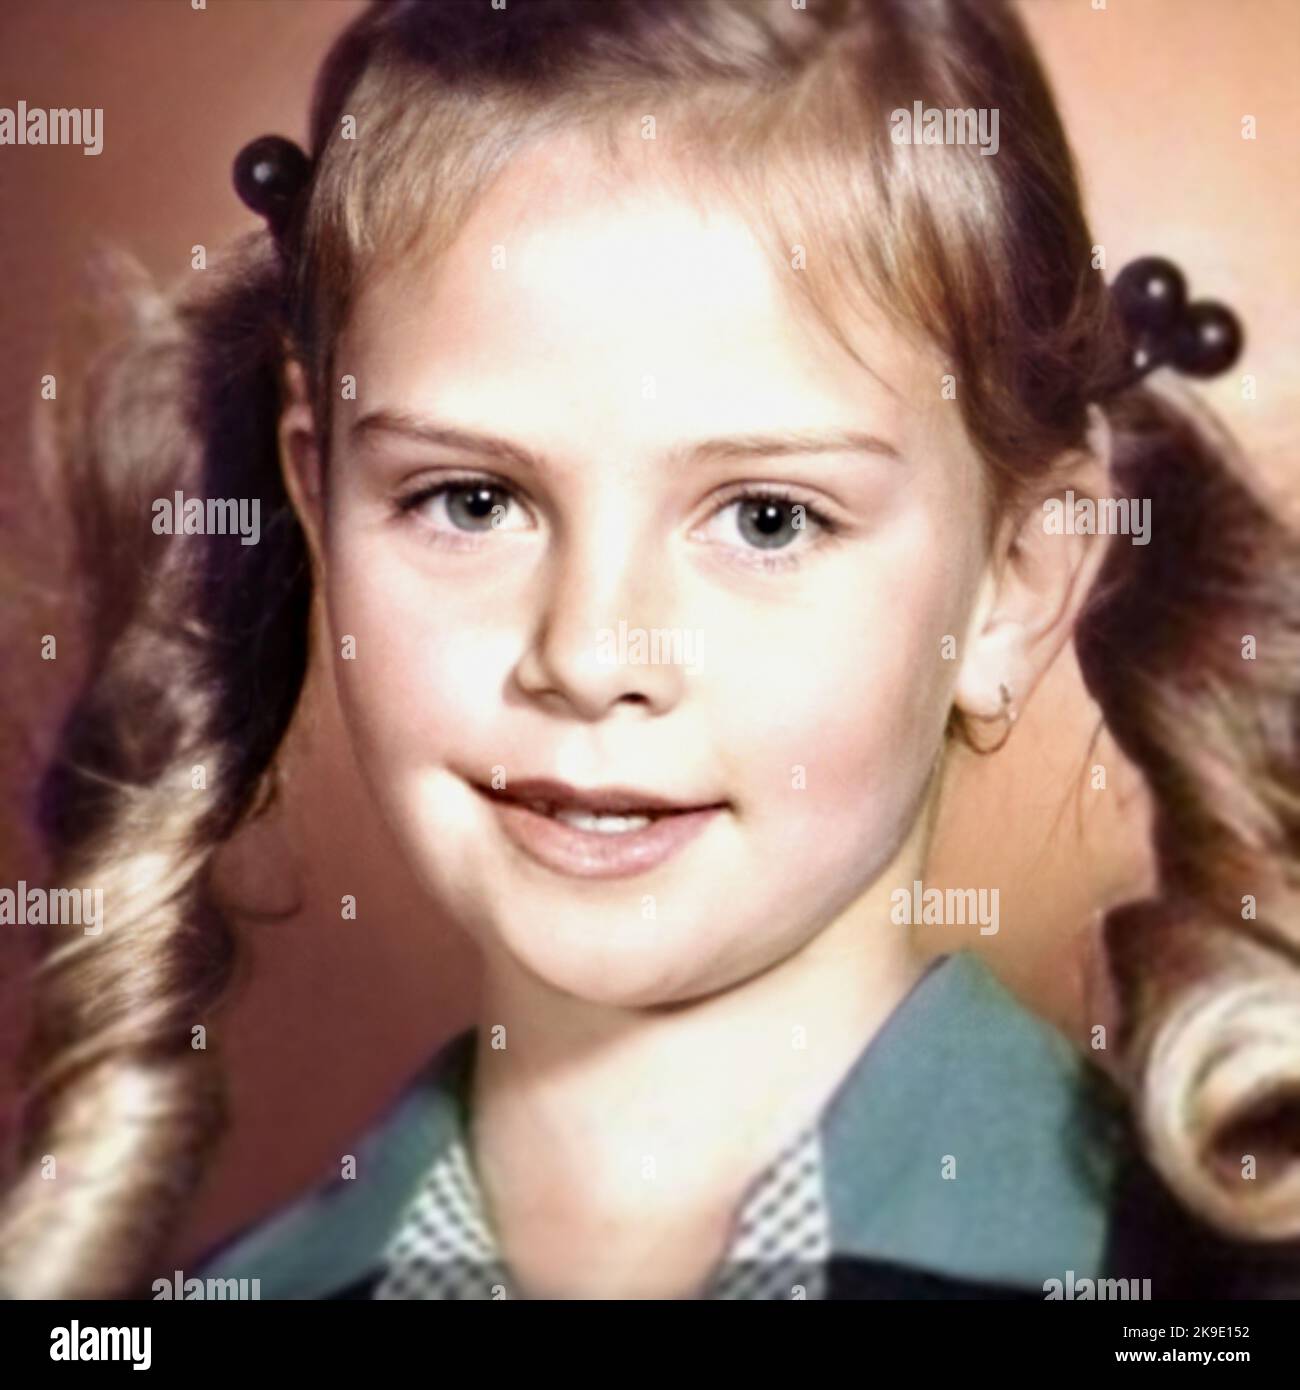 1983 , USA : die gefeierte amerikanische Schauspielerin CHARLIZE THERON ( geboren 7. august 1975 ), als ein junges Mädchen , im Alter von 8 . Unbekannter Fotograf .- GESCHICHTE - FOTO STORICHE - ATTRICE - FILM - KINO - personalità da da giovane giovani - da Bambina Bambini bambino - Persönlichkeit Persönlichkeiten, als jung war - SEX SYMBOL - blond - bionda - Lächeln - sorriso - Codini - Pony Schwänze - GESCHICHTE - FOTO STORICHE --- ARCHIVIO GBB Stockfoto